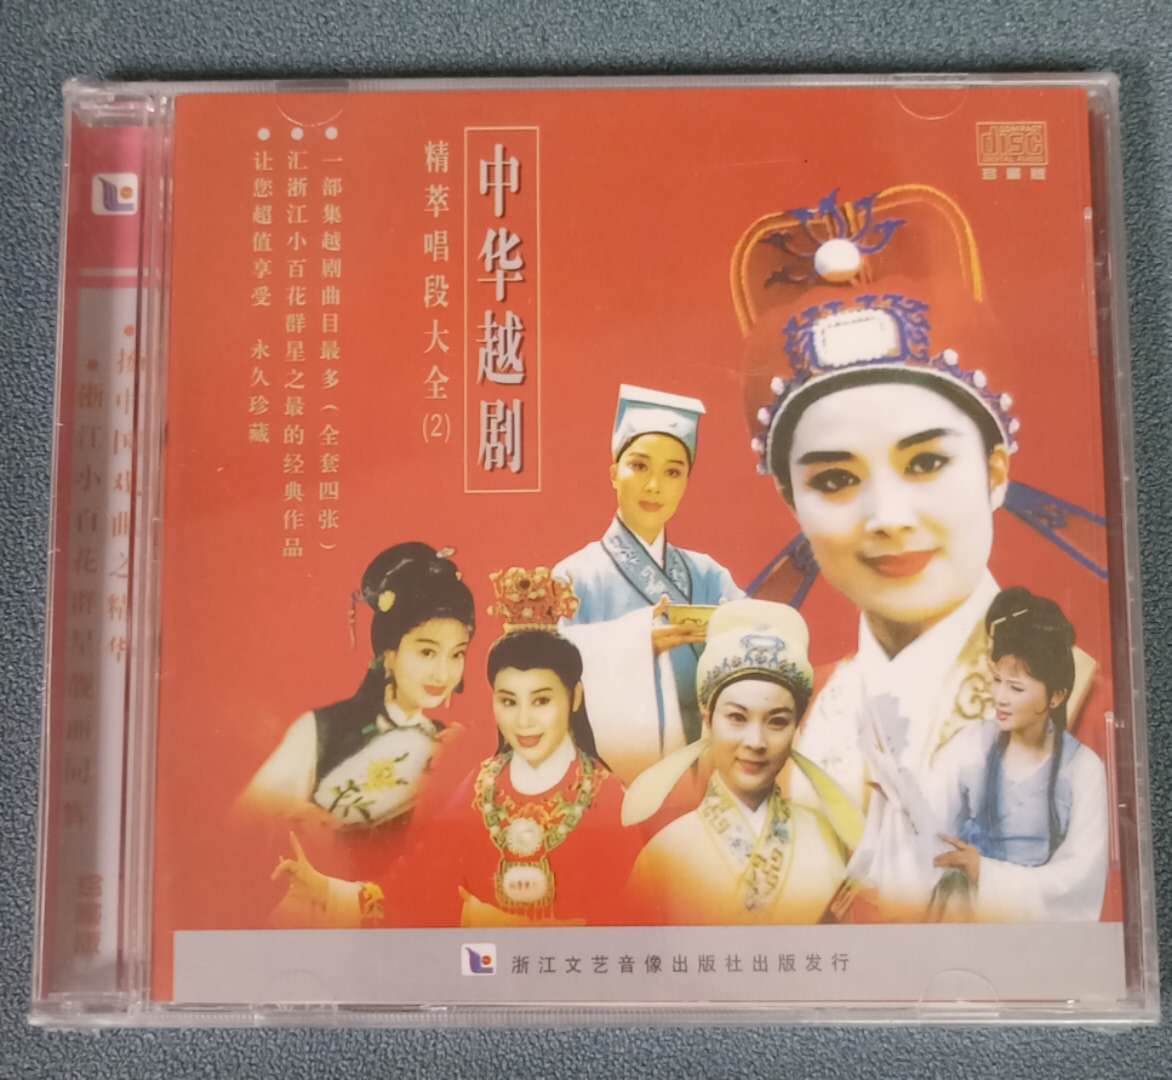 正版越剧CD唱片中华越剧精萃唱段大全(2)  1CD茅威涛钱惠丽何英等